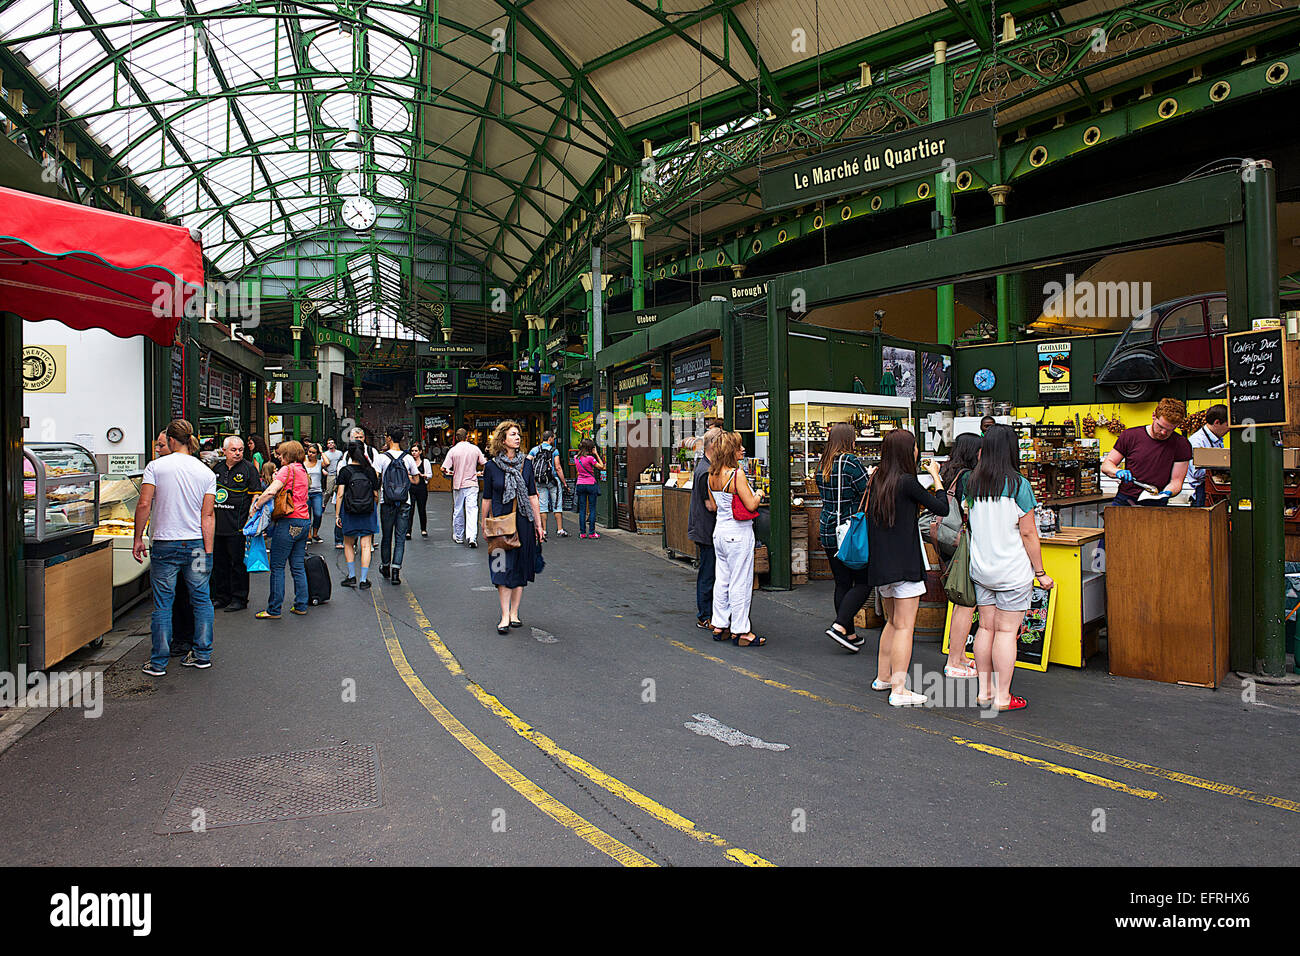 Borrow Market, London, UK Stock Photo